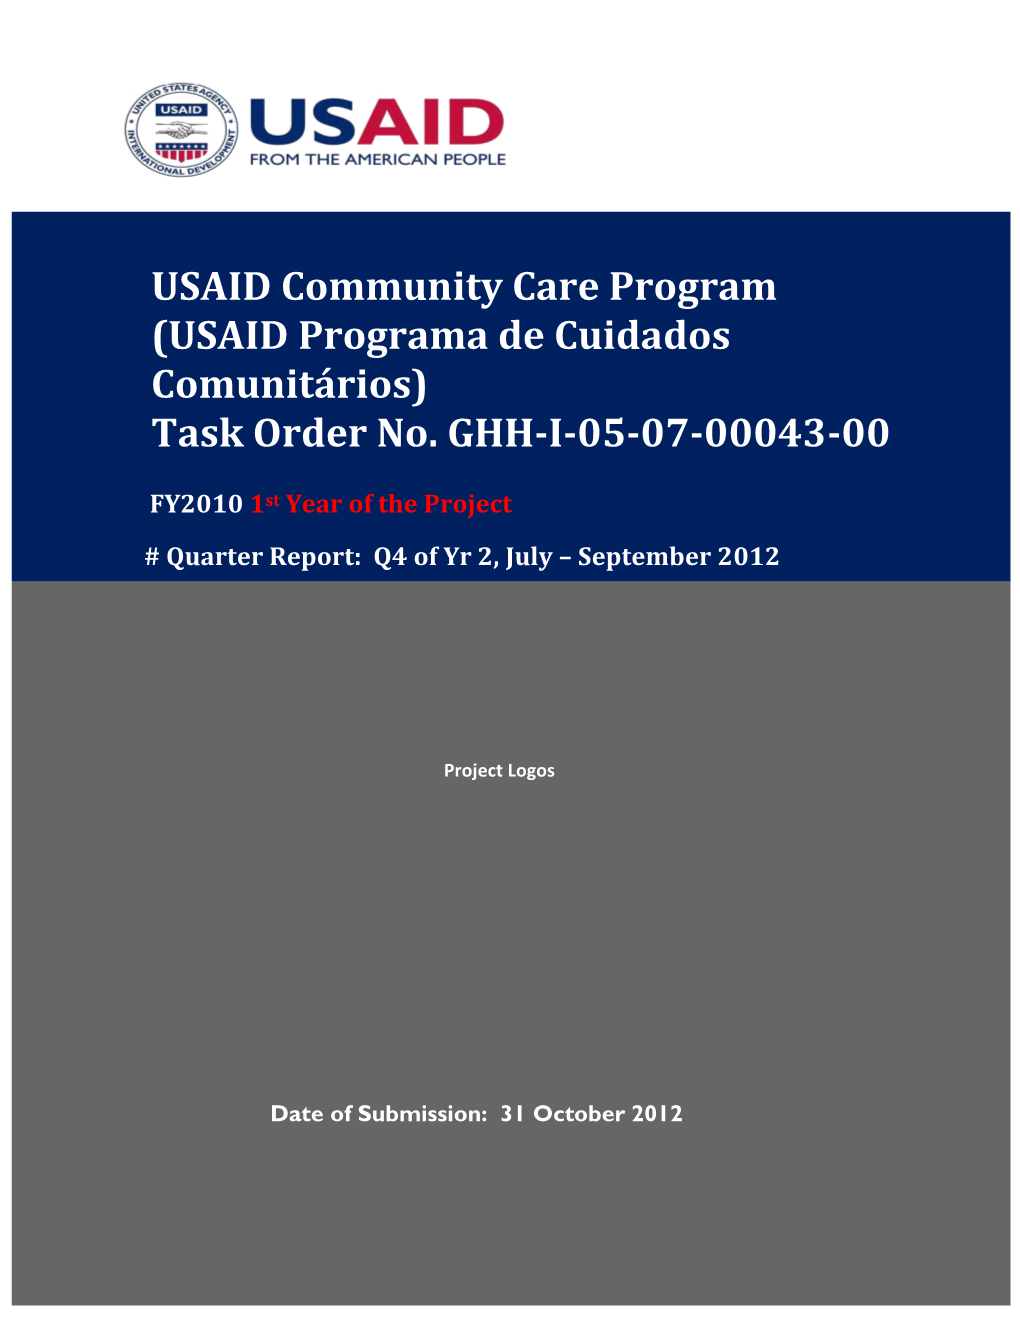 USAID Community Care Program (USAID Programa De Cuidados